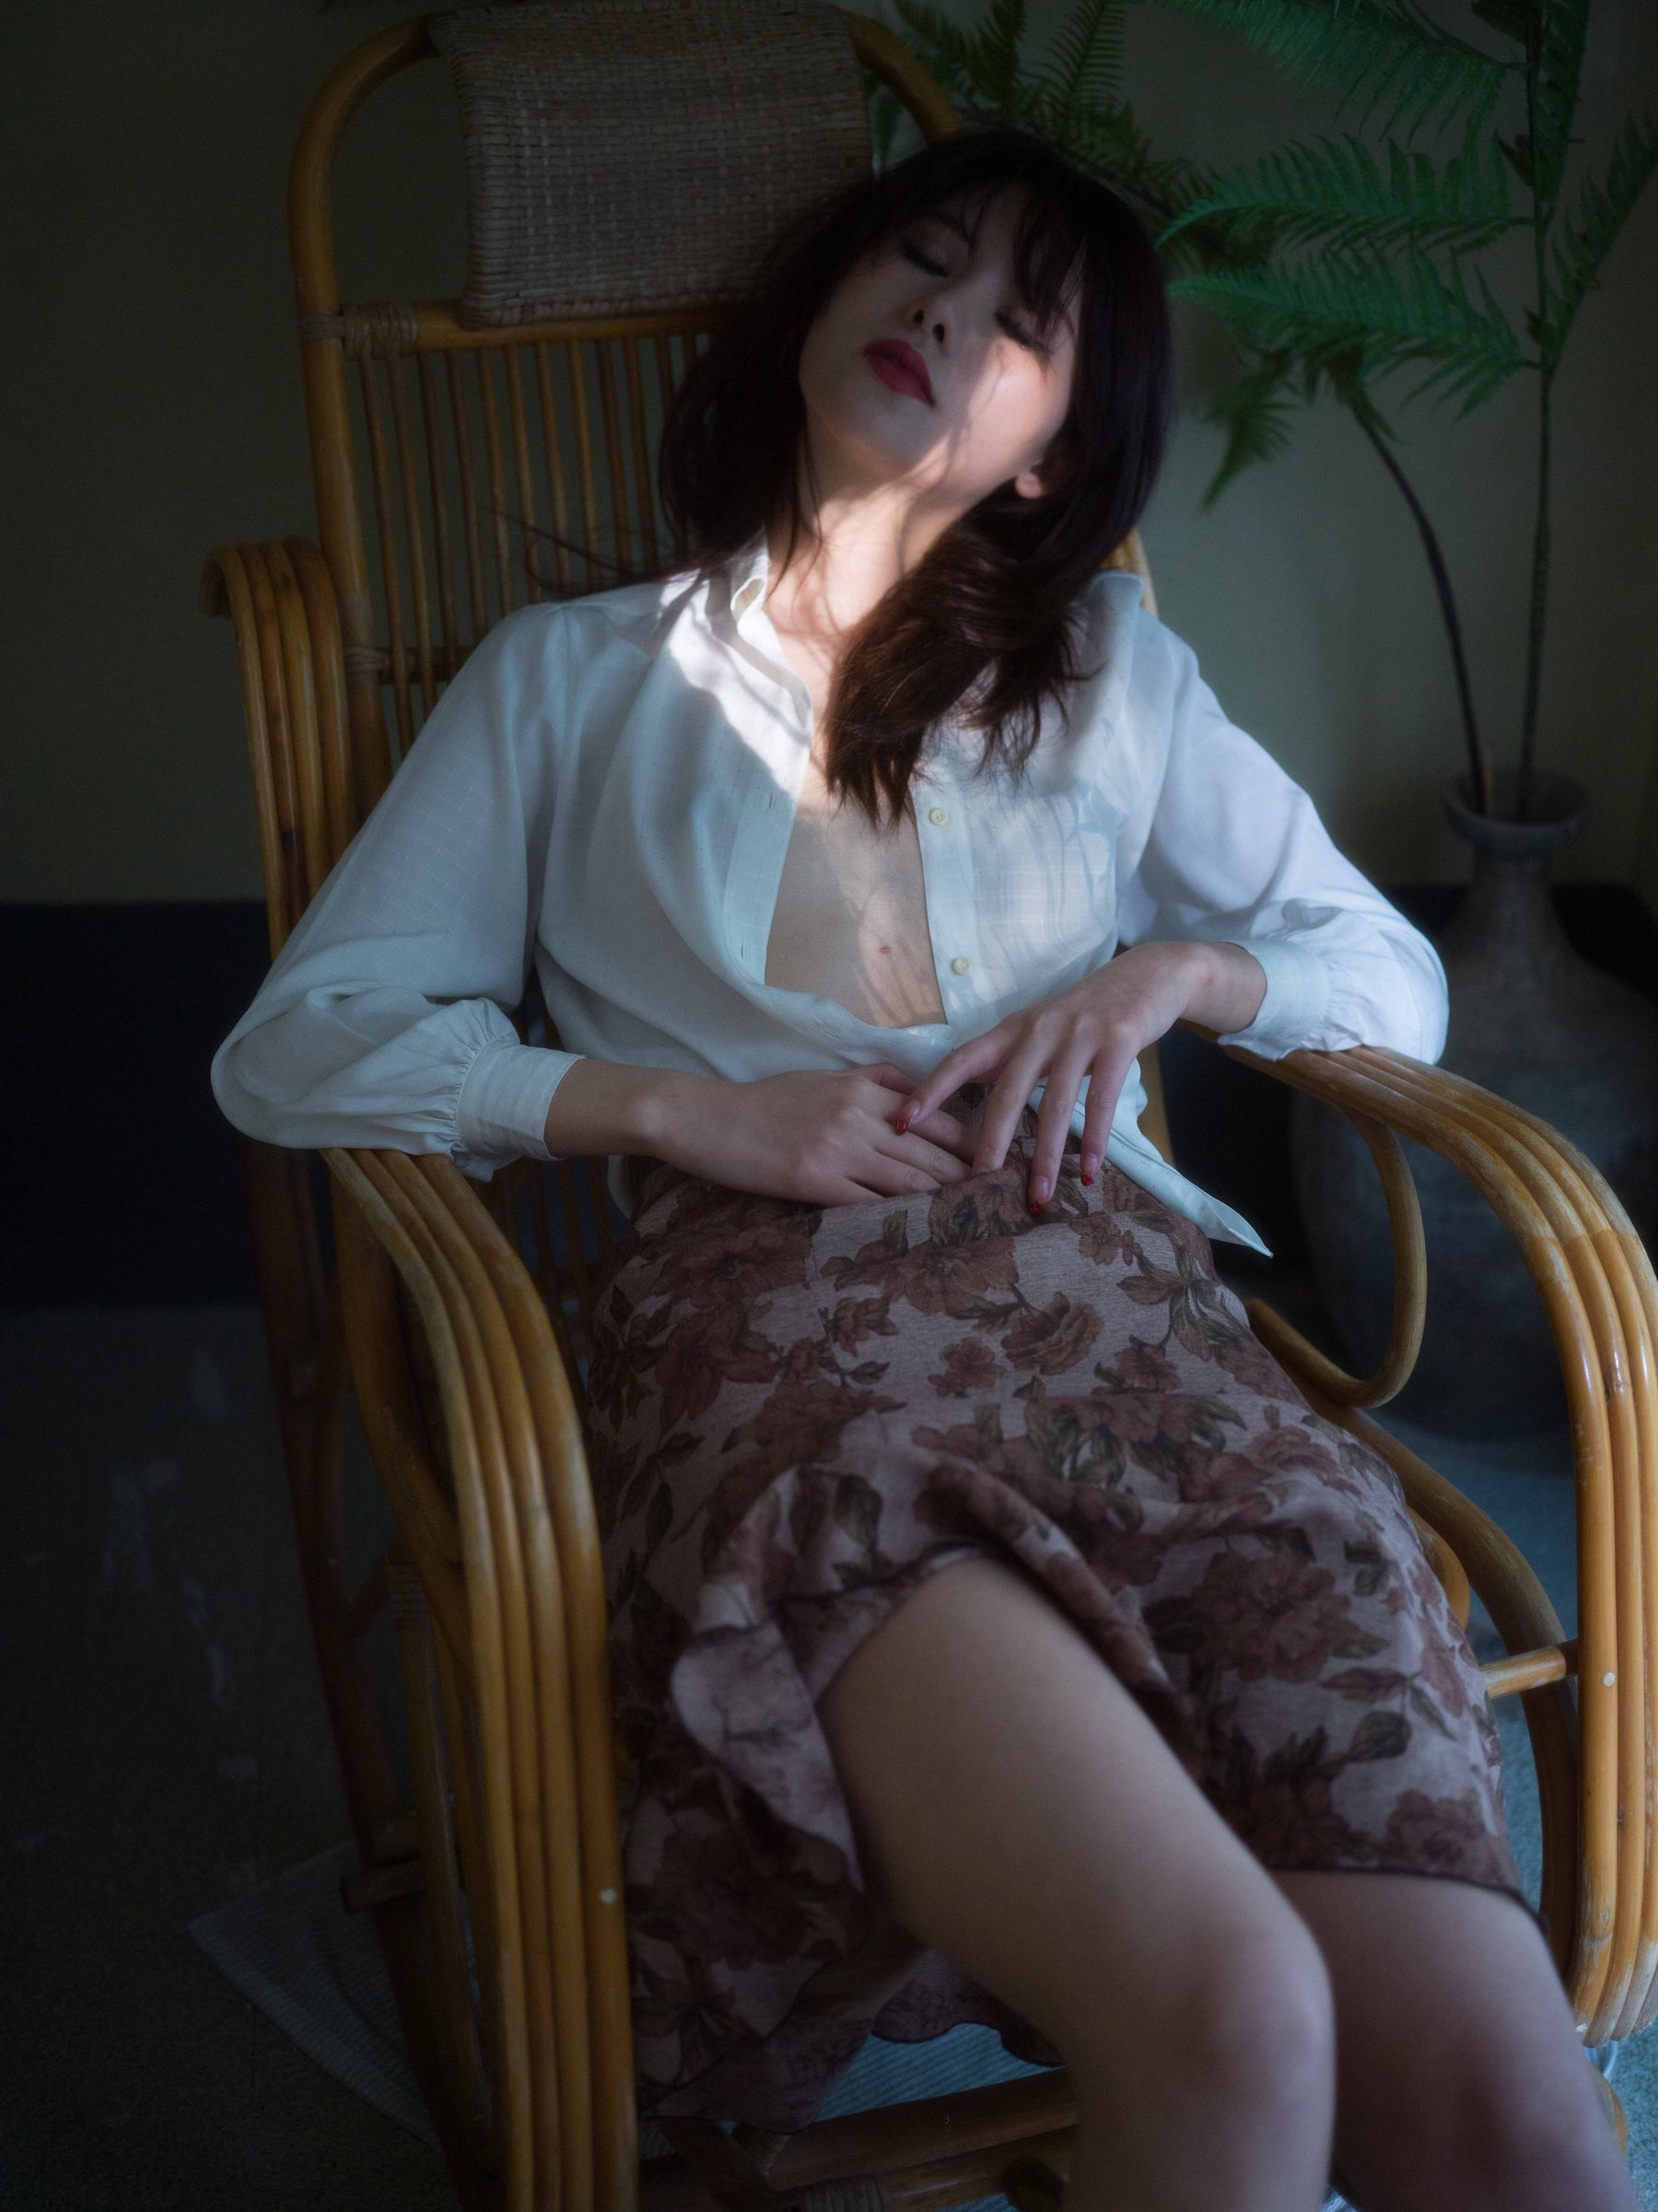 美女模特Azhua19970(阿朱啊) - 晚烟/(76P)